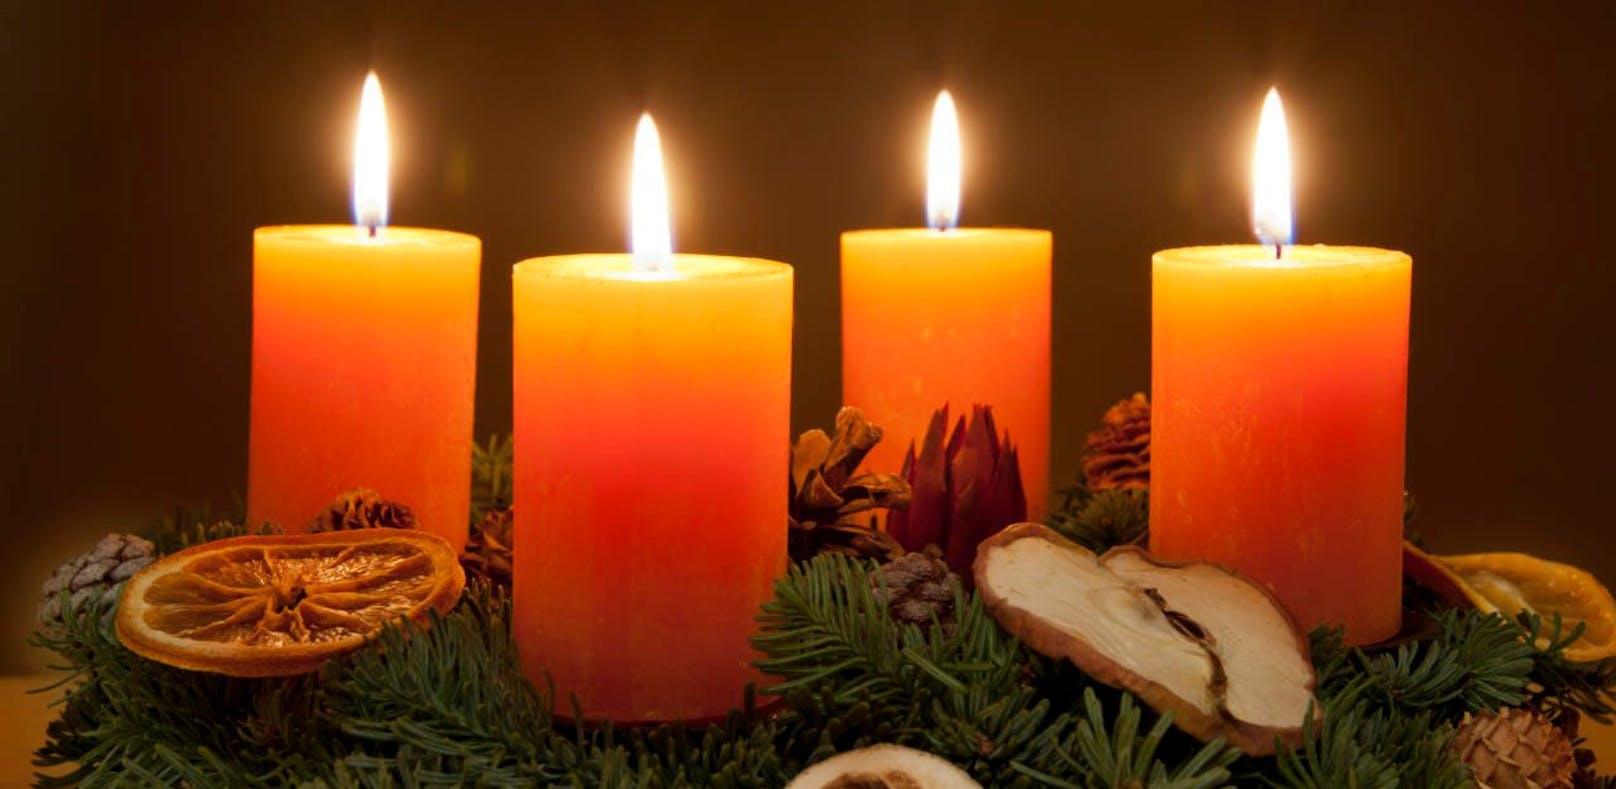 Heute, am 24. Dezember, brennen alle Kerzen am Adventkranz.